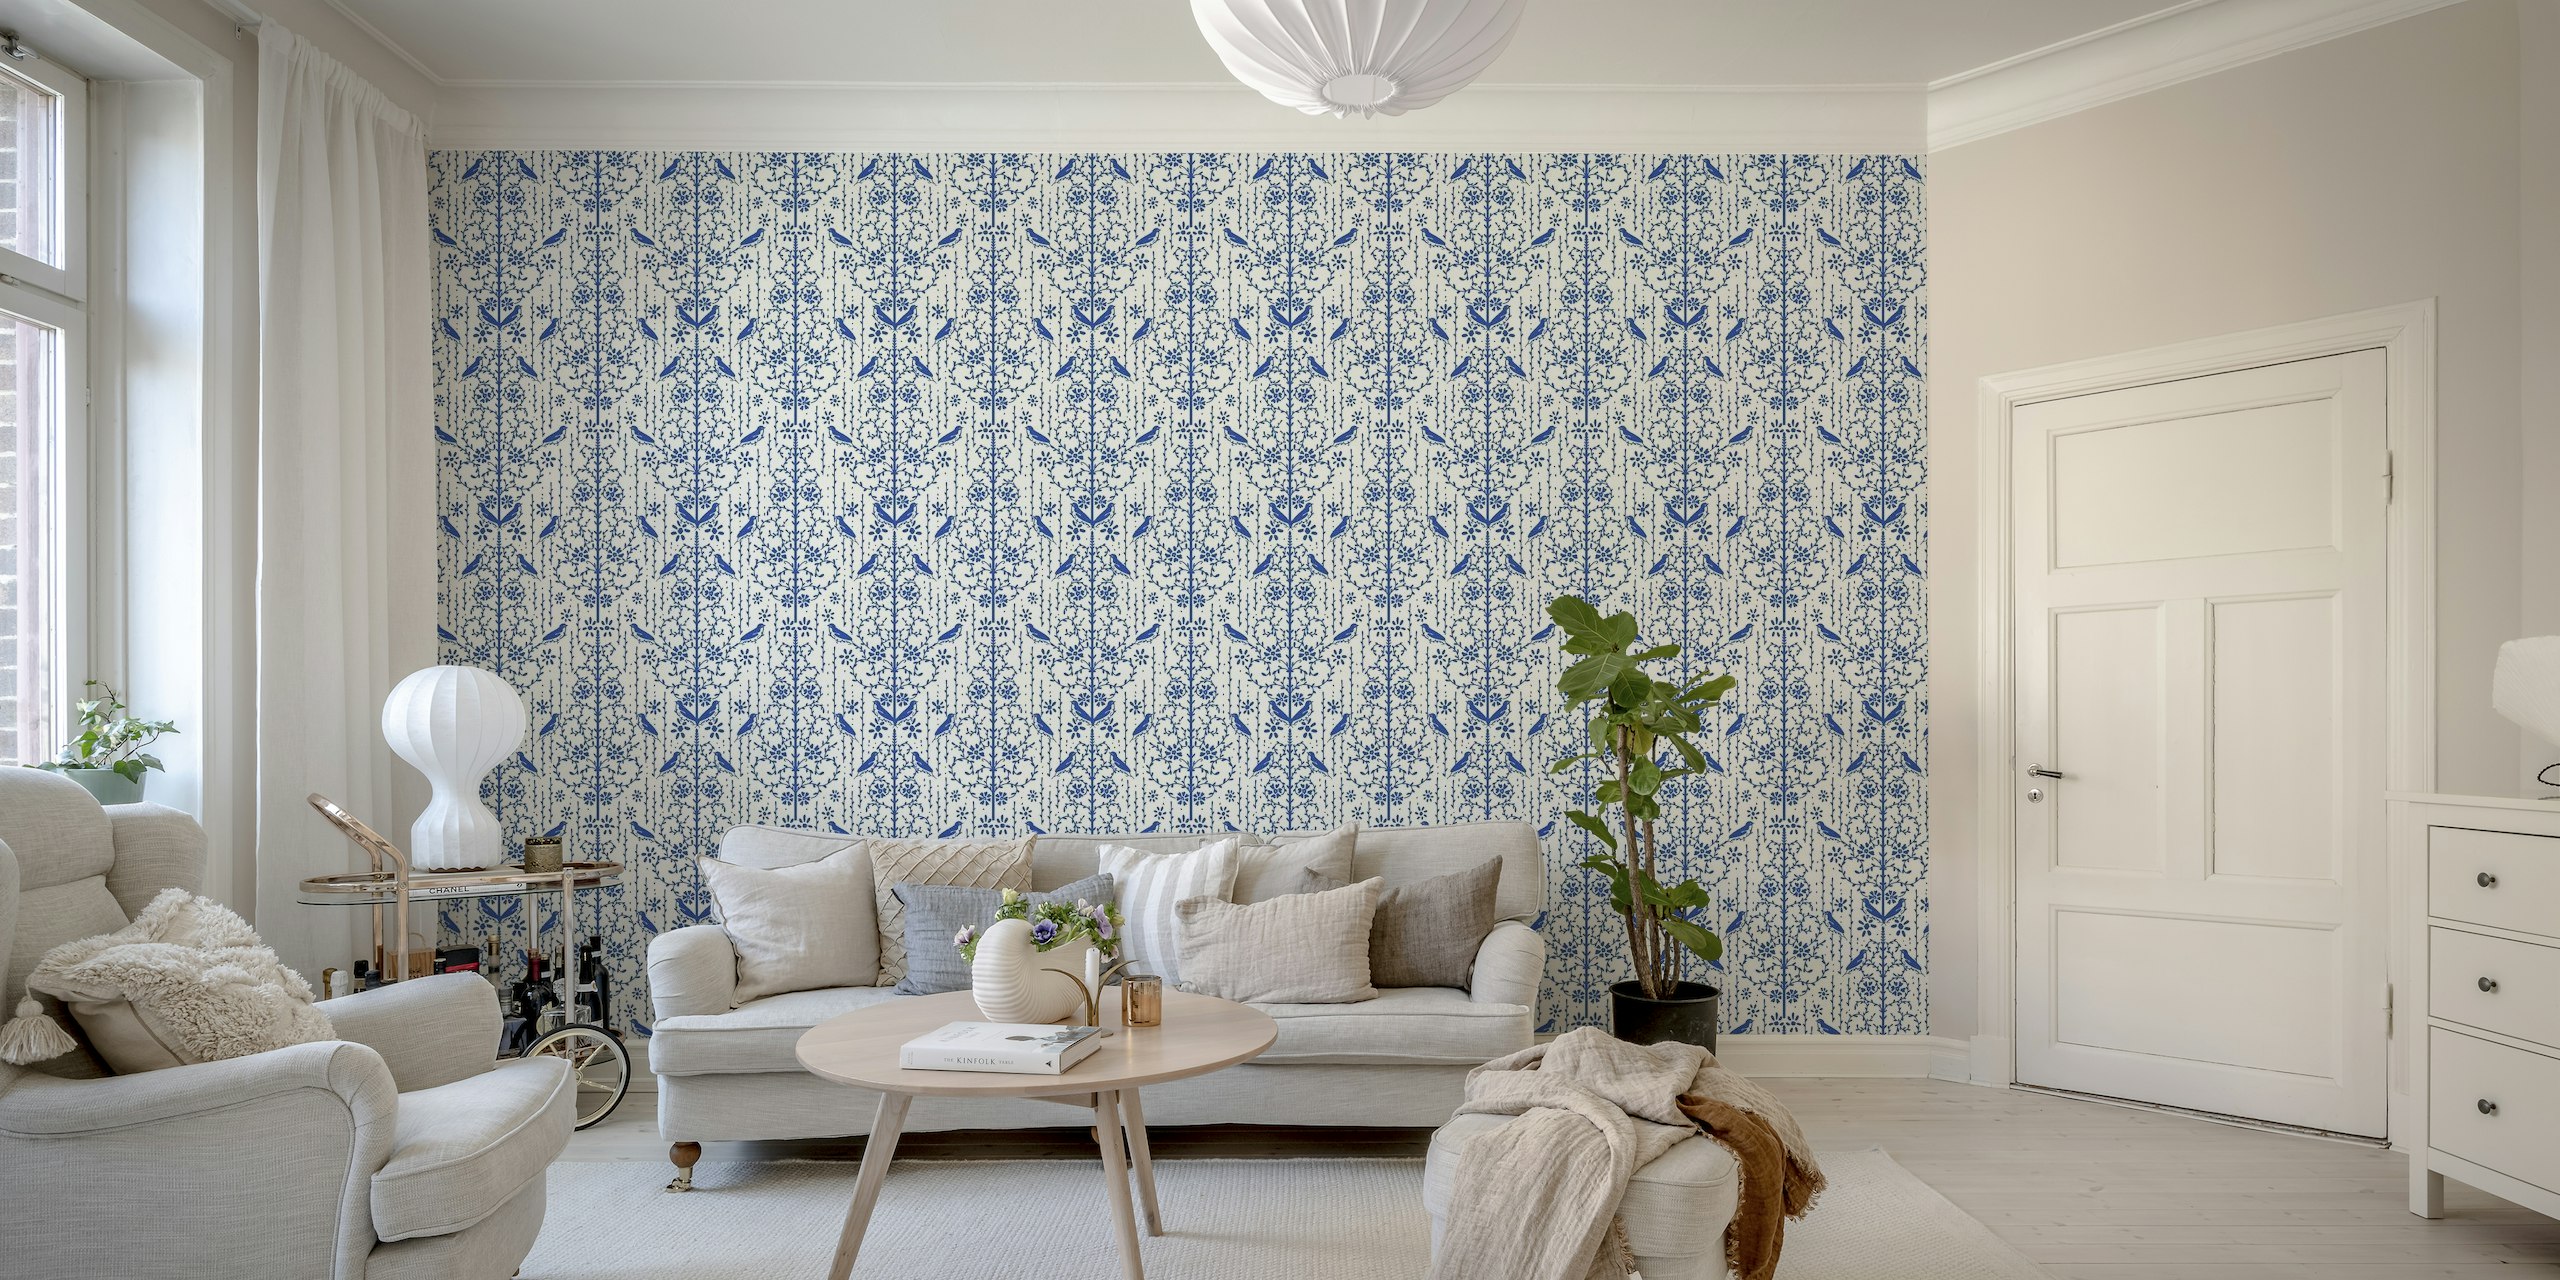 Mural de pared clásico de cabaña francesa azul con motivos florales azules sobre fondo blanco